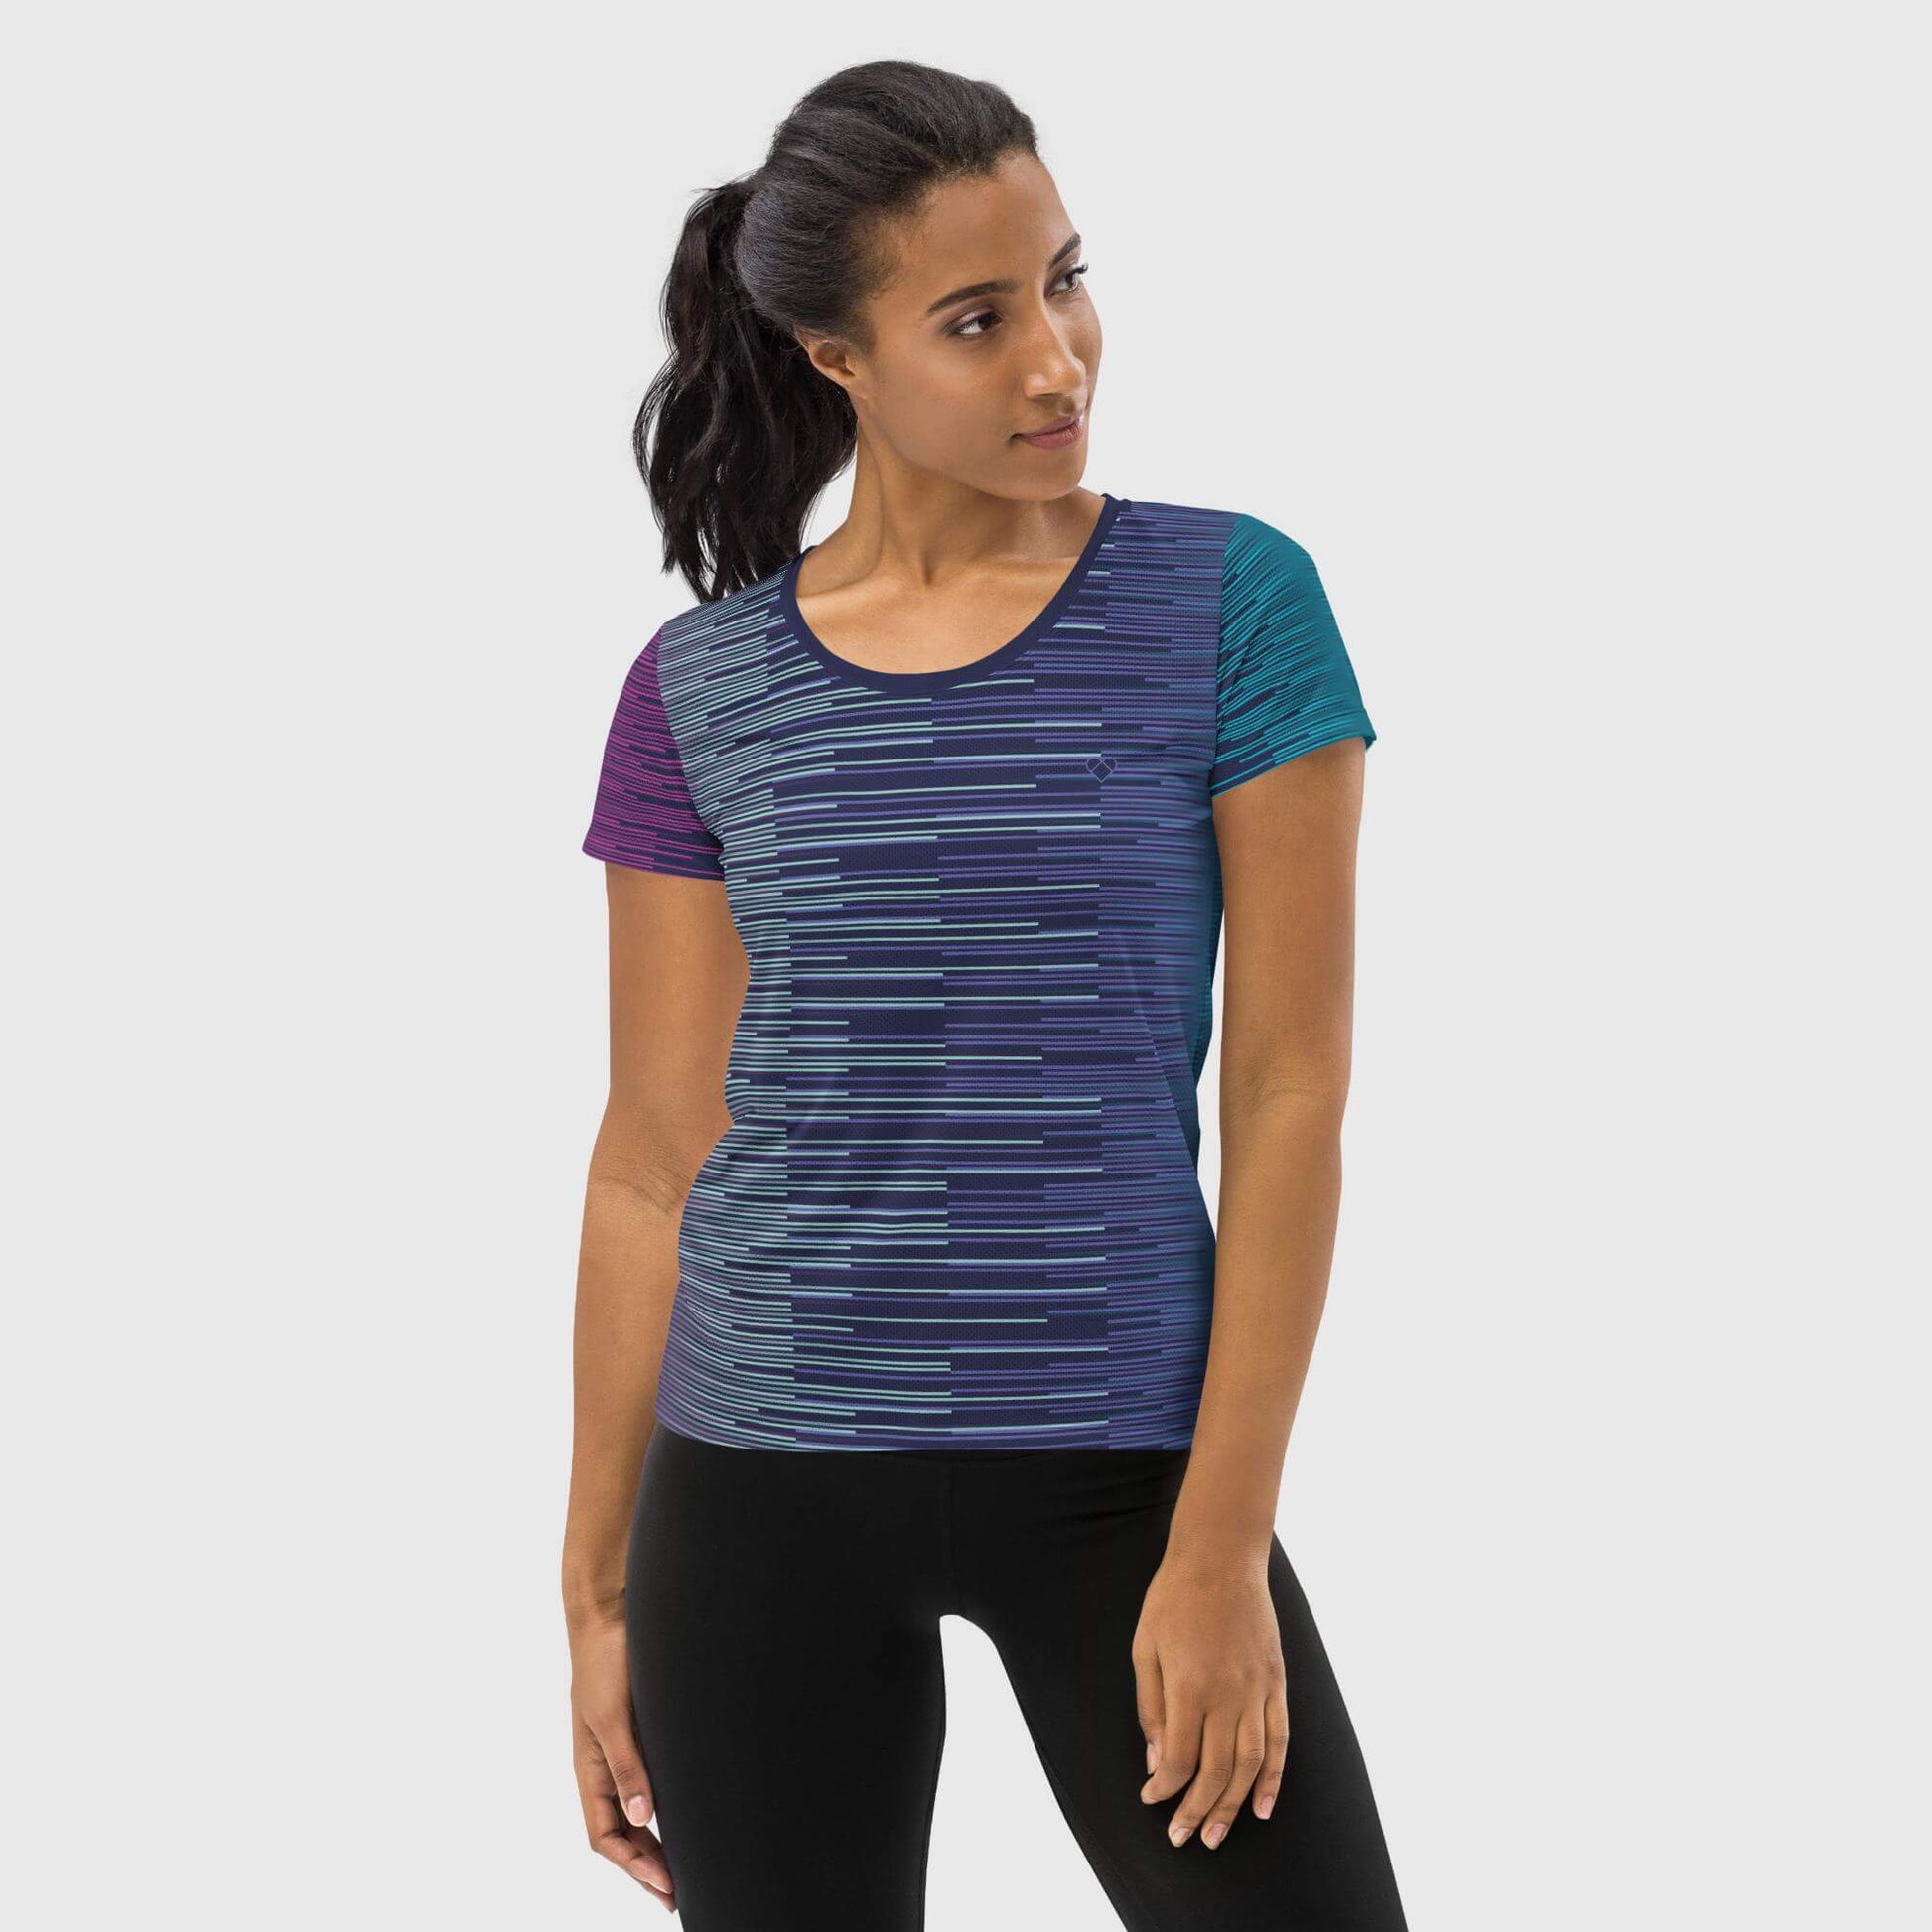 Amor Dual Women's Sport Shirt in Slate Blue